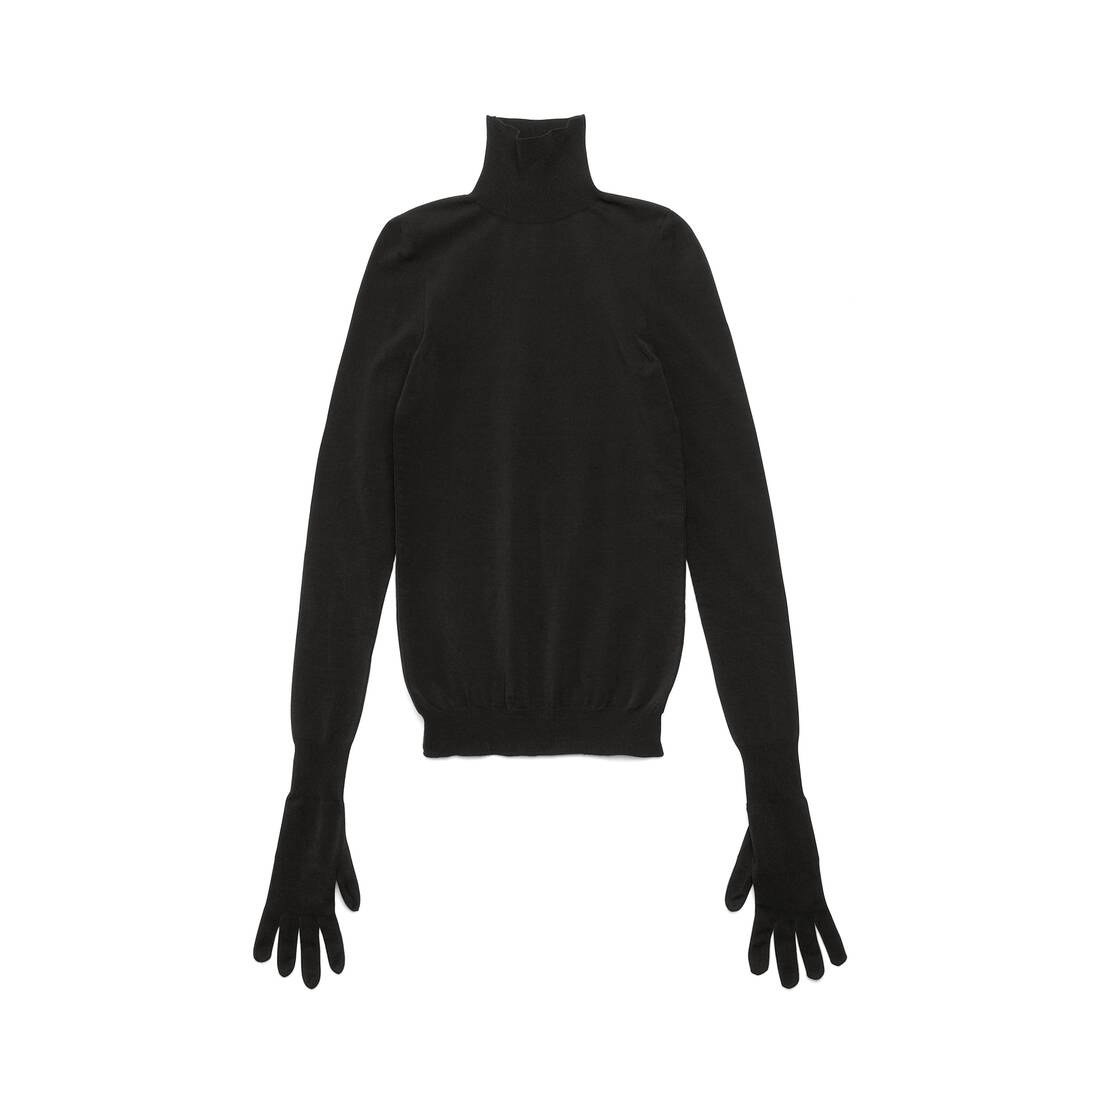 Women's Gloves Sweater in Black - 1